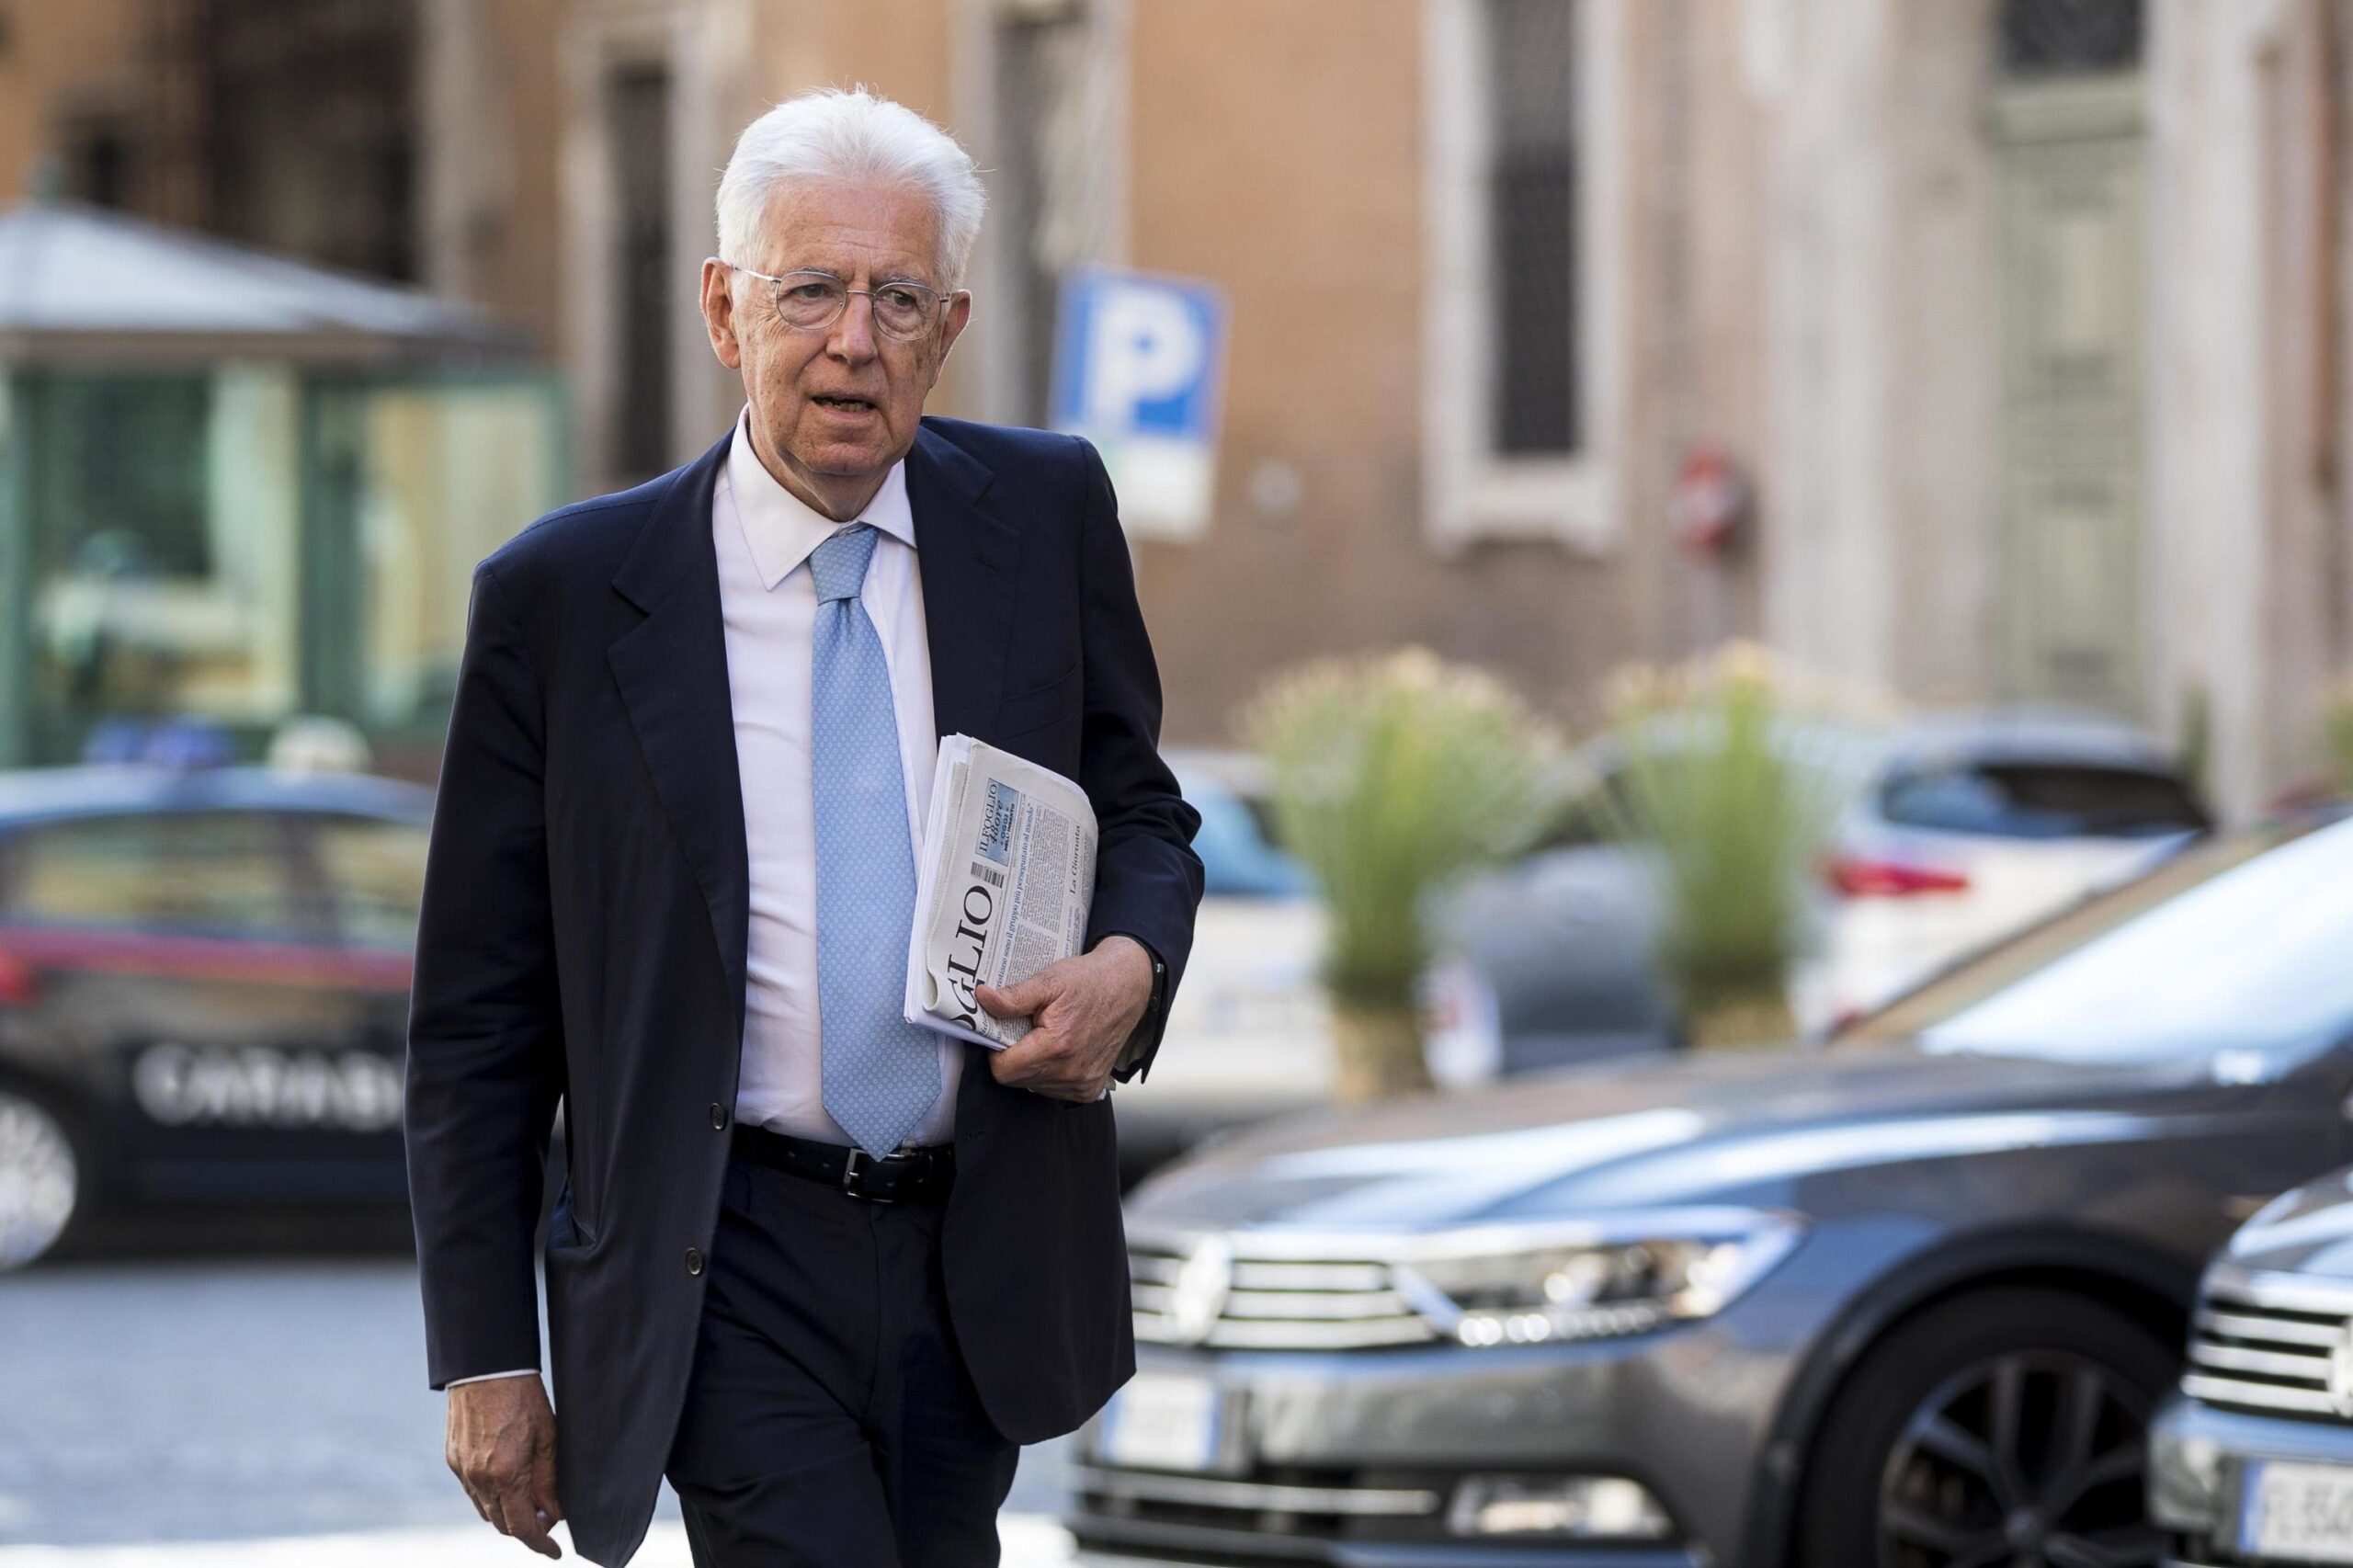 Monti critica Crosetto: "Attacchi alla Bce sbagliati, a volte il silenzio è più utile"